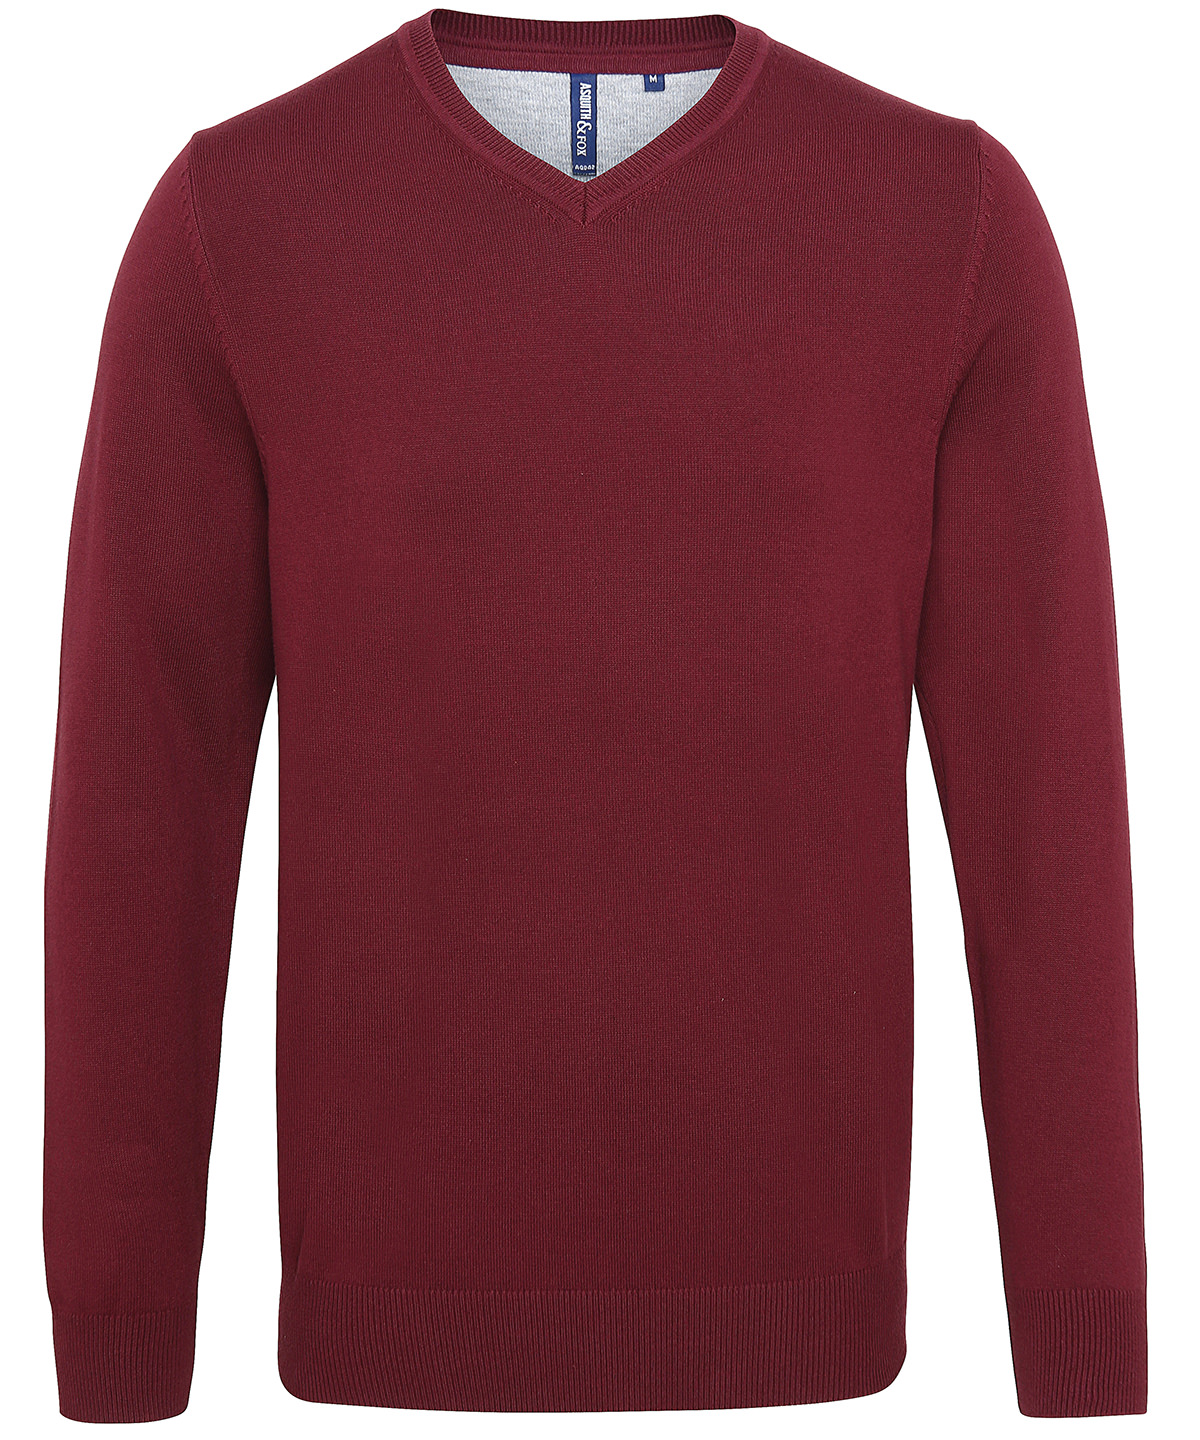 Mens Cotton Blend V-Neck Sweater Burgundy Size Large